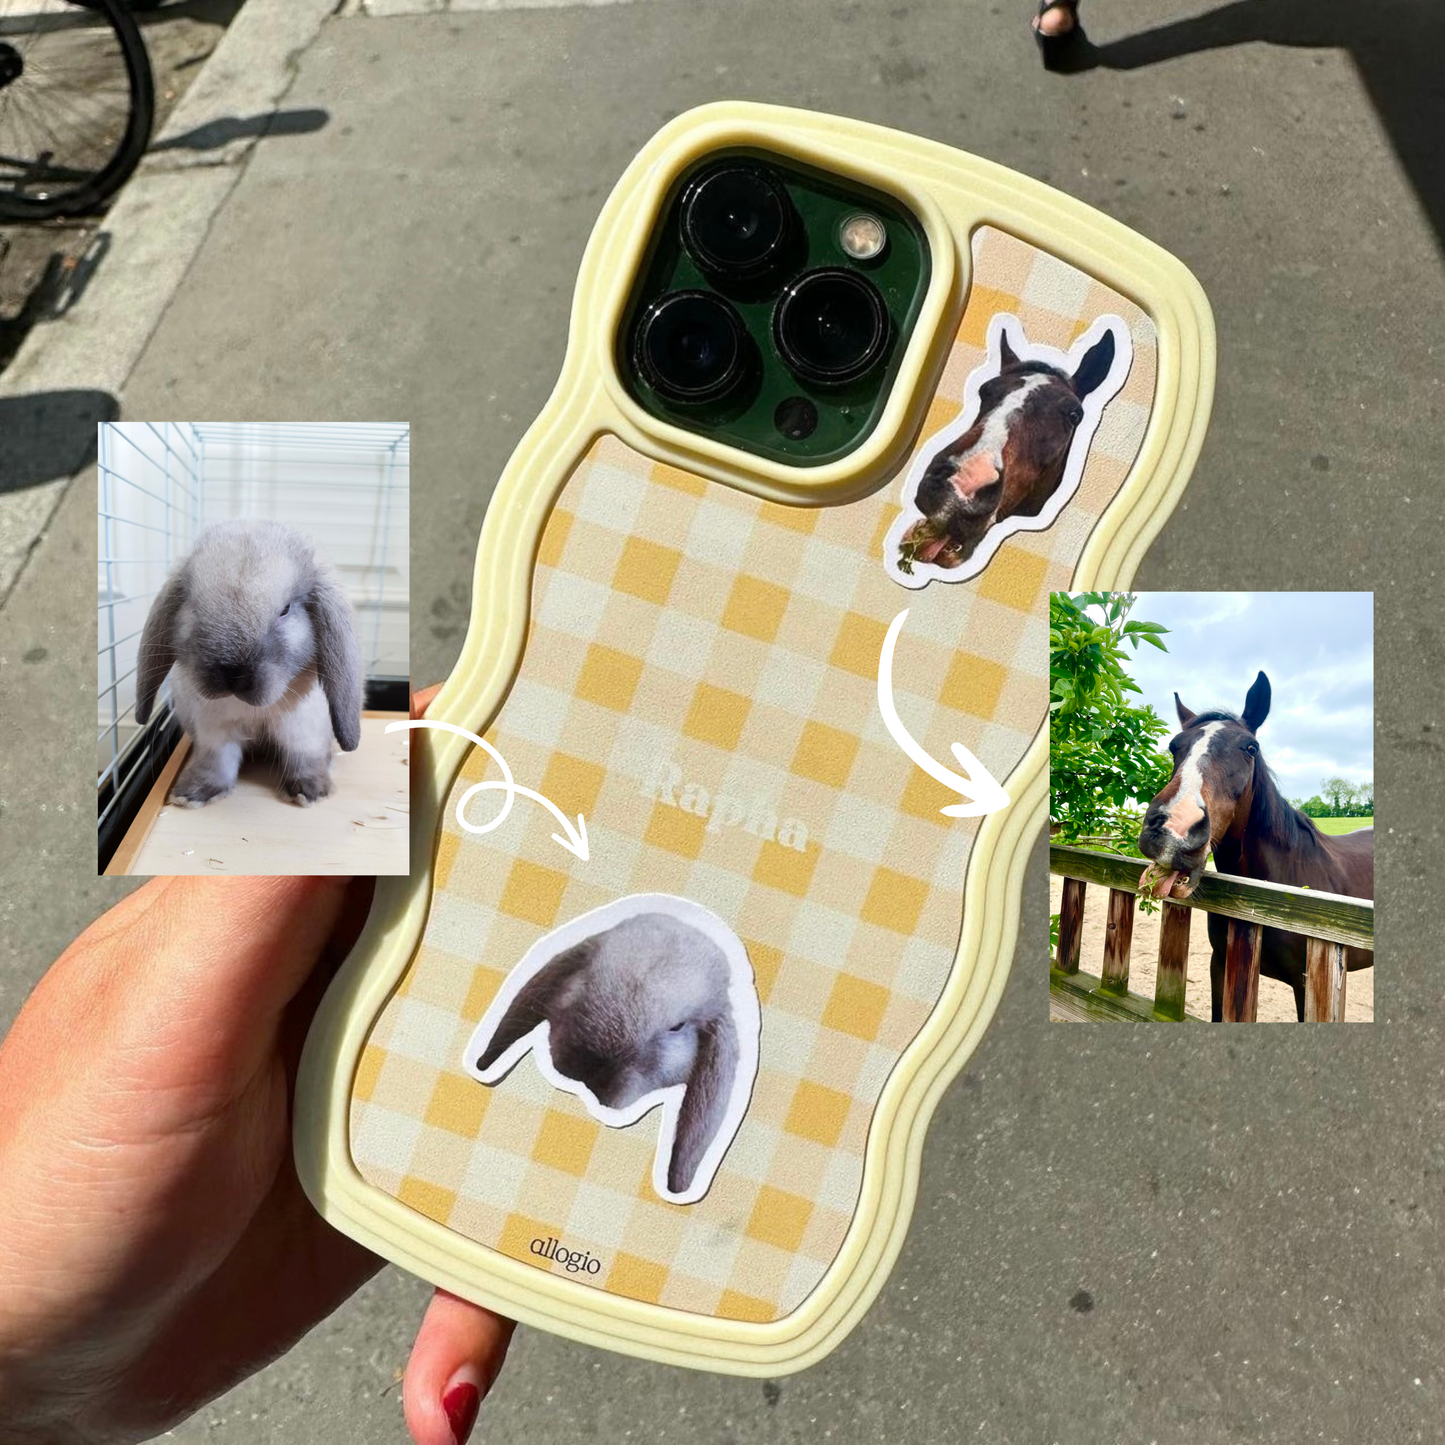 Autocollant Décor Drôle pour Voiture Photo de l'Animal qui Regarde Sticker  Mignon Personnalisé avec Nom Photo Cadeau pour Amoureux des Animaux - CALLIE